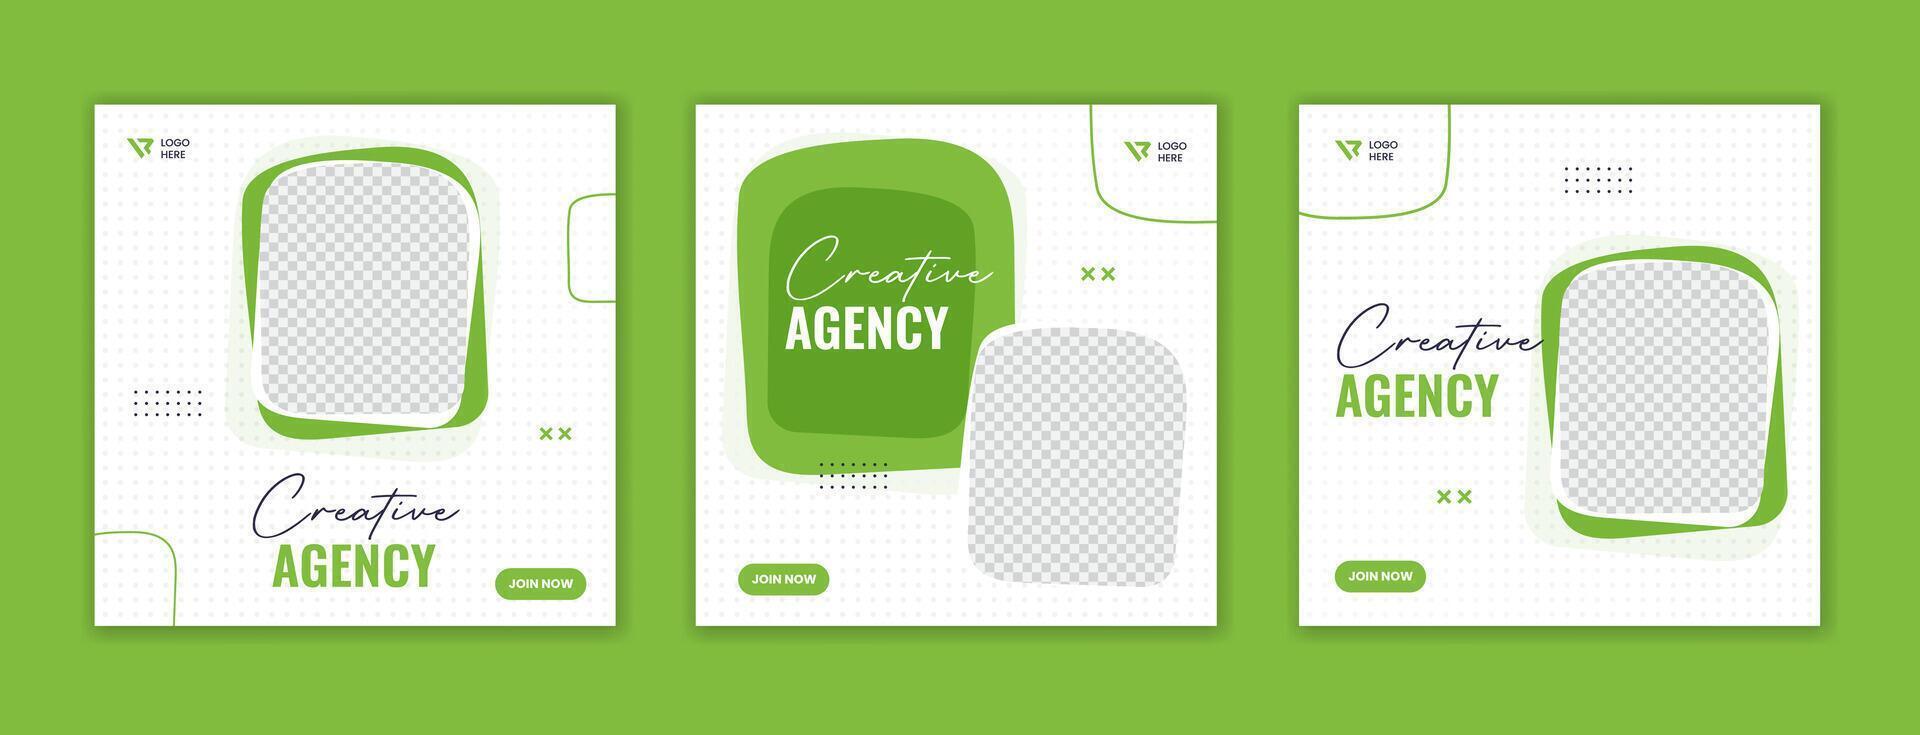 verde orgánico forma corporativo social medios de comunicación enviar diseño, creativo agencia anuncio modelo vector